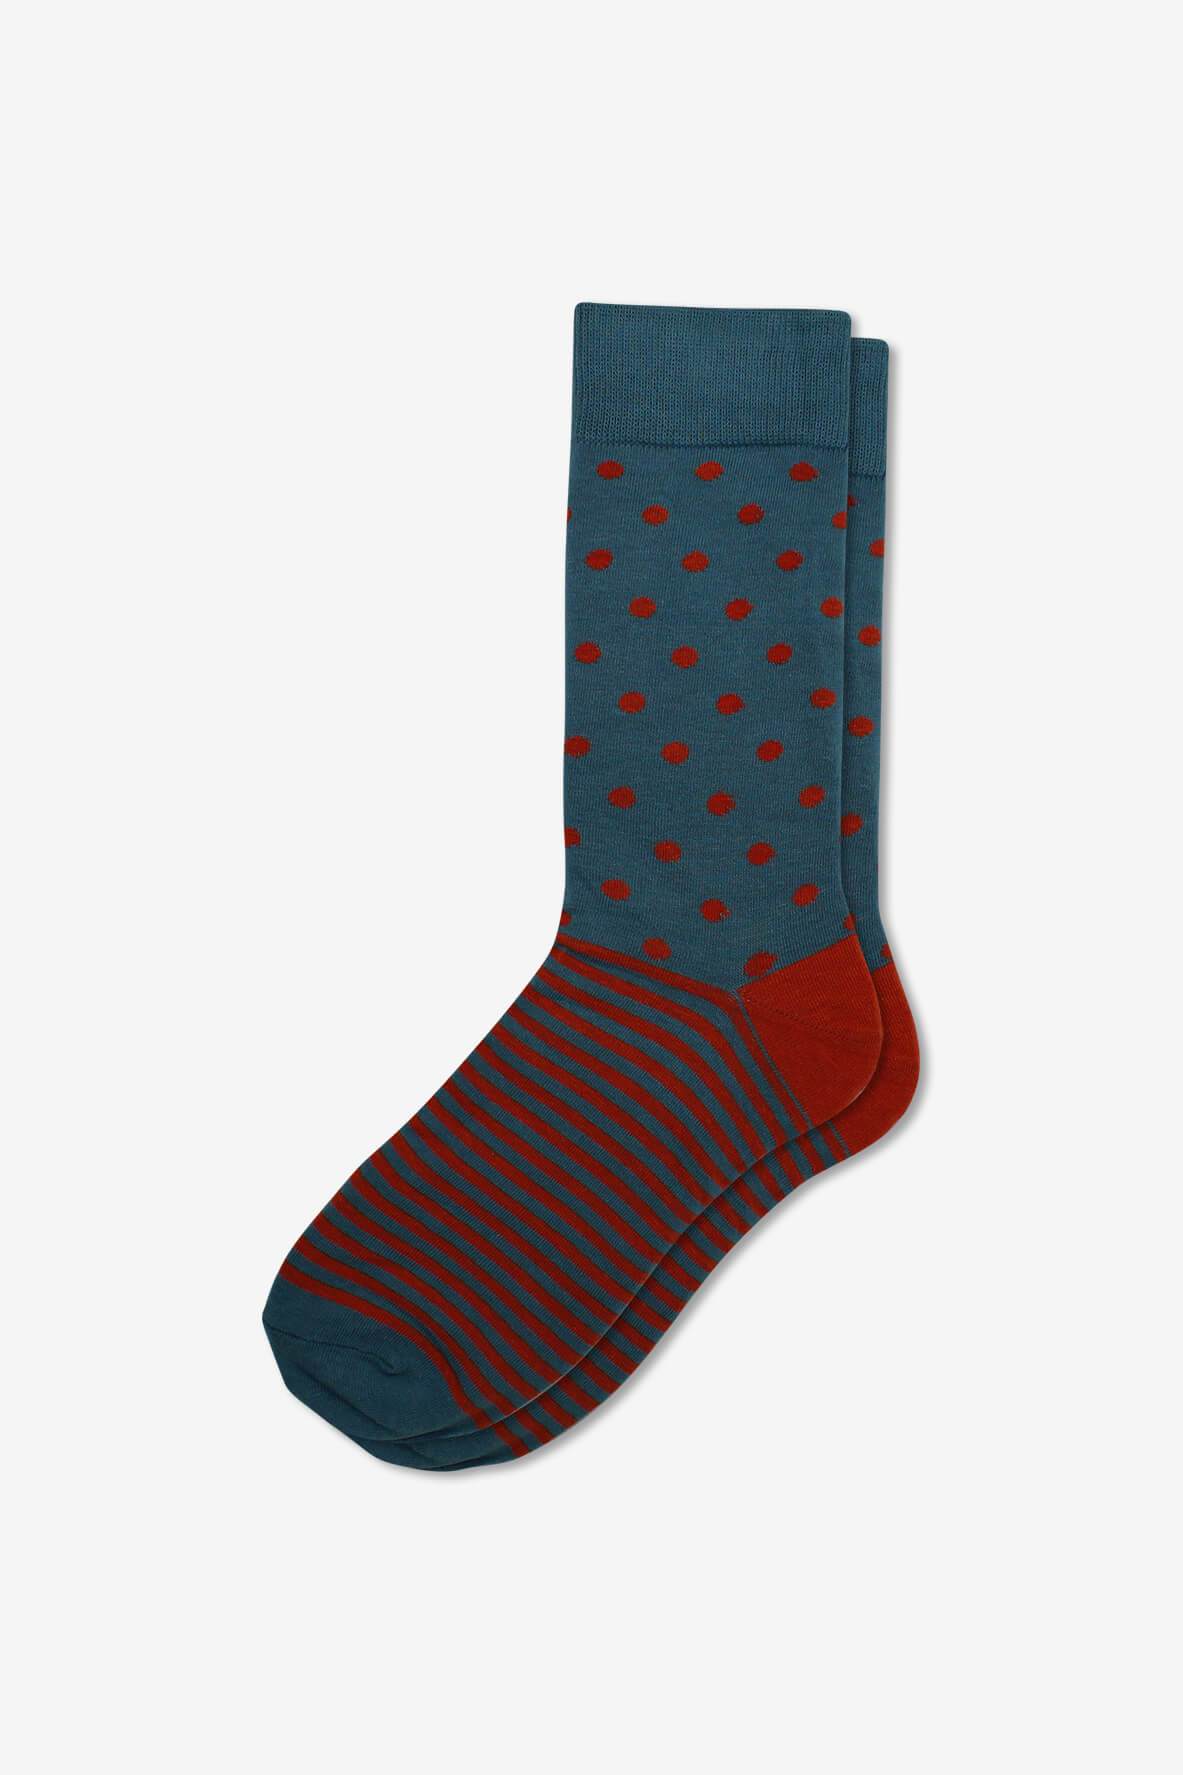 Socks IMG_5332, socks, GoTie